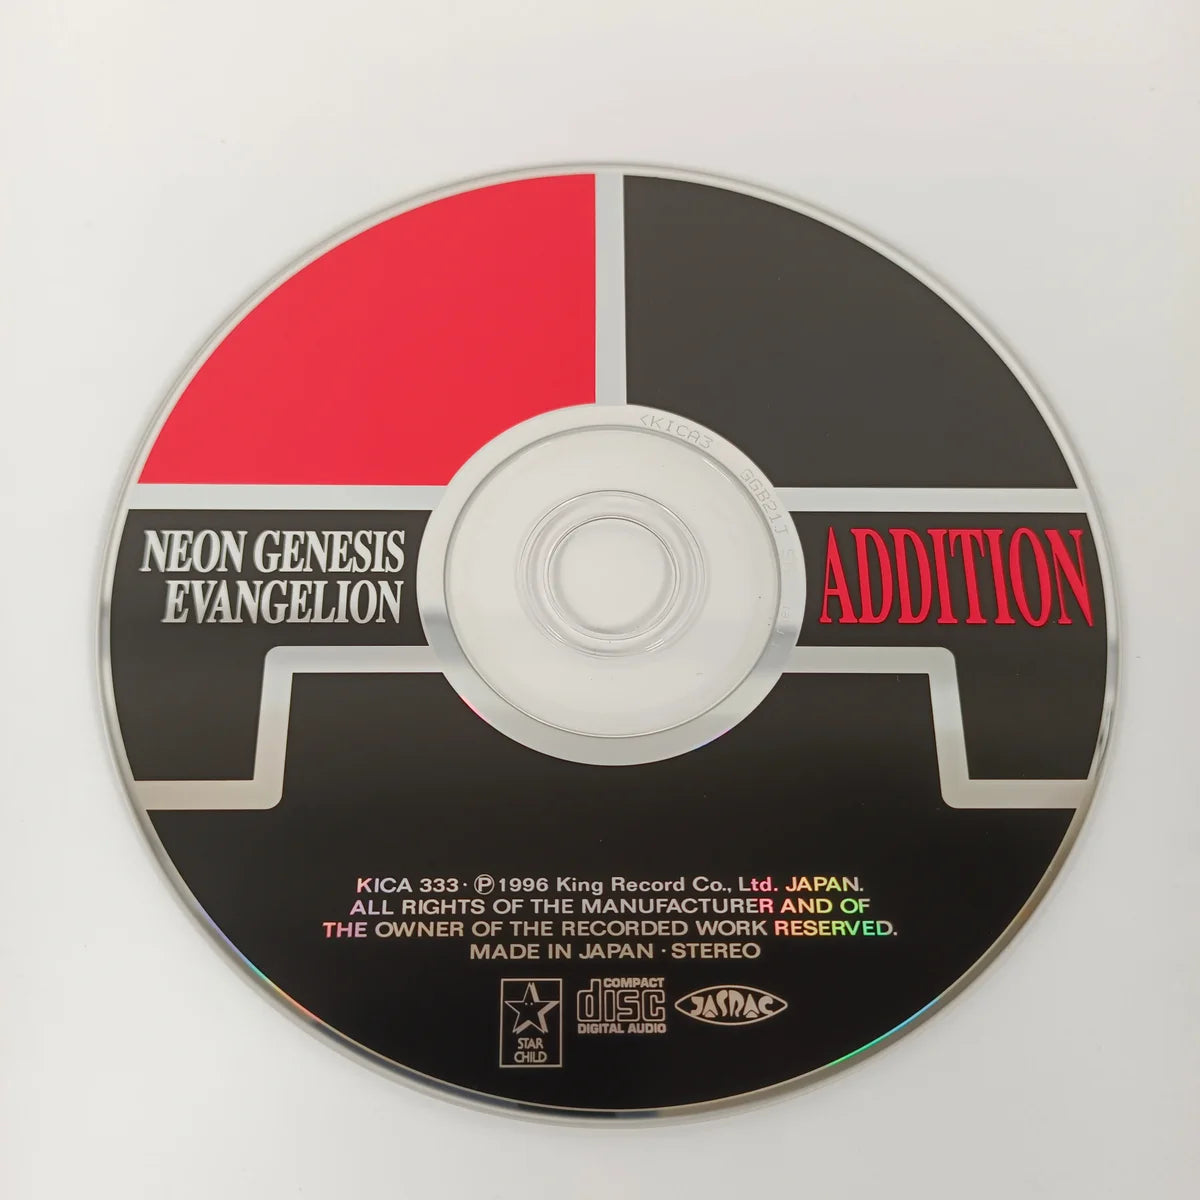 Neon Genesis Evangelion Addition